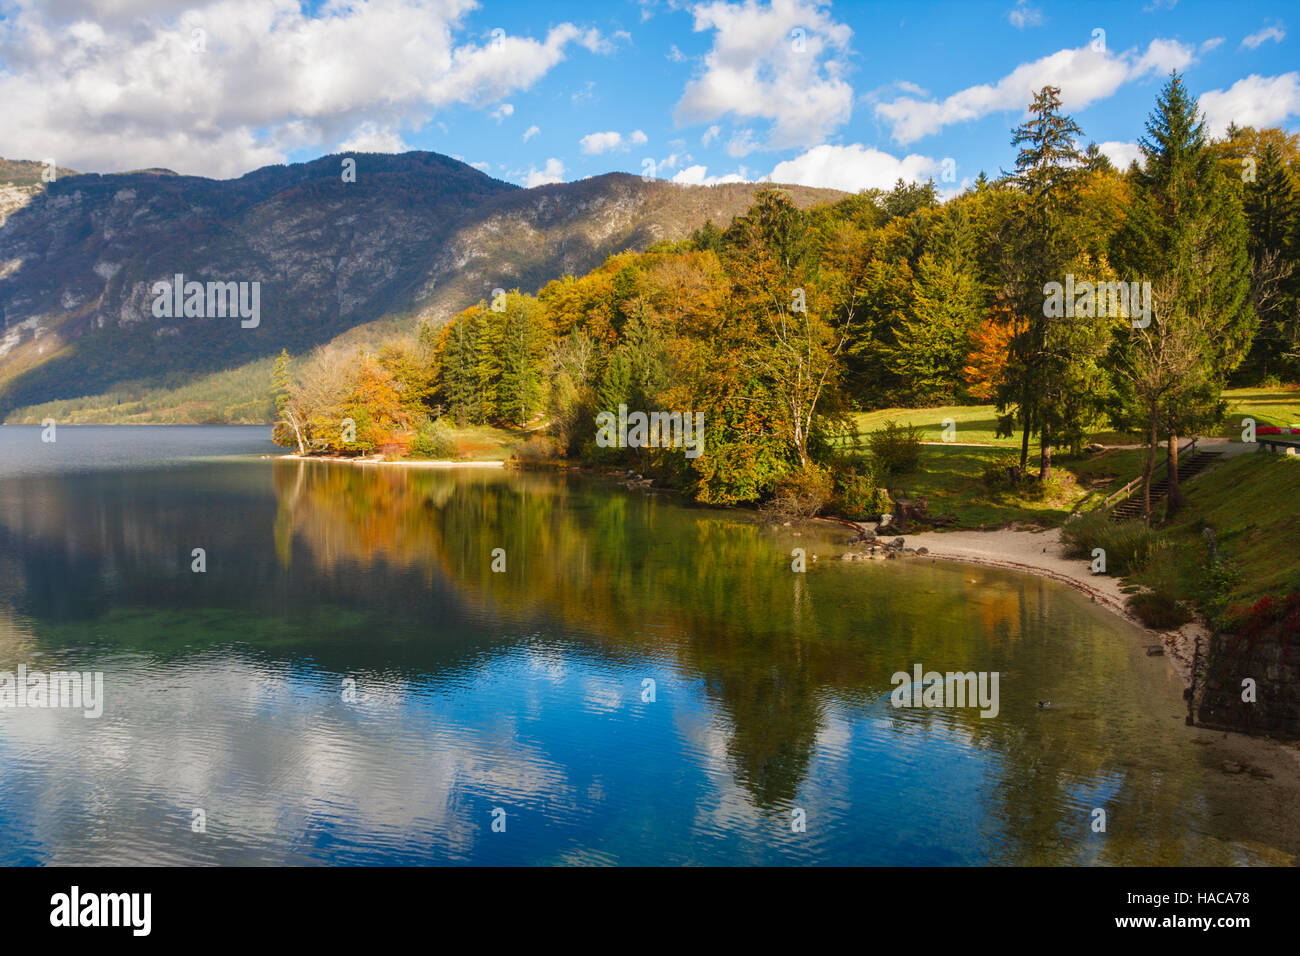 Los árboles con hermosos colores de otoño bajo un cielo azul se reflejan en el lago de Bohinj en el Parque Nacional de Triglav, en Eslovenia. Foto de stock